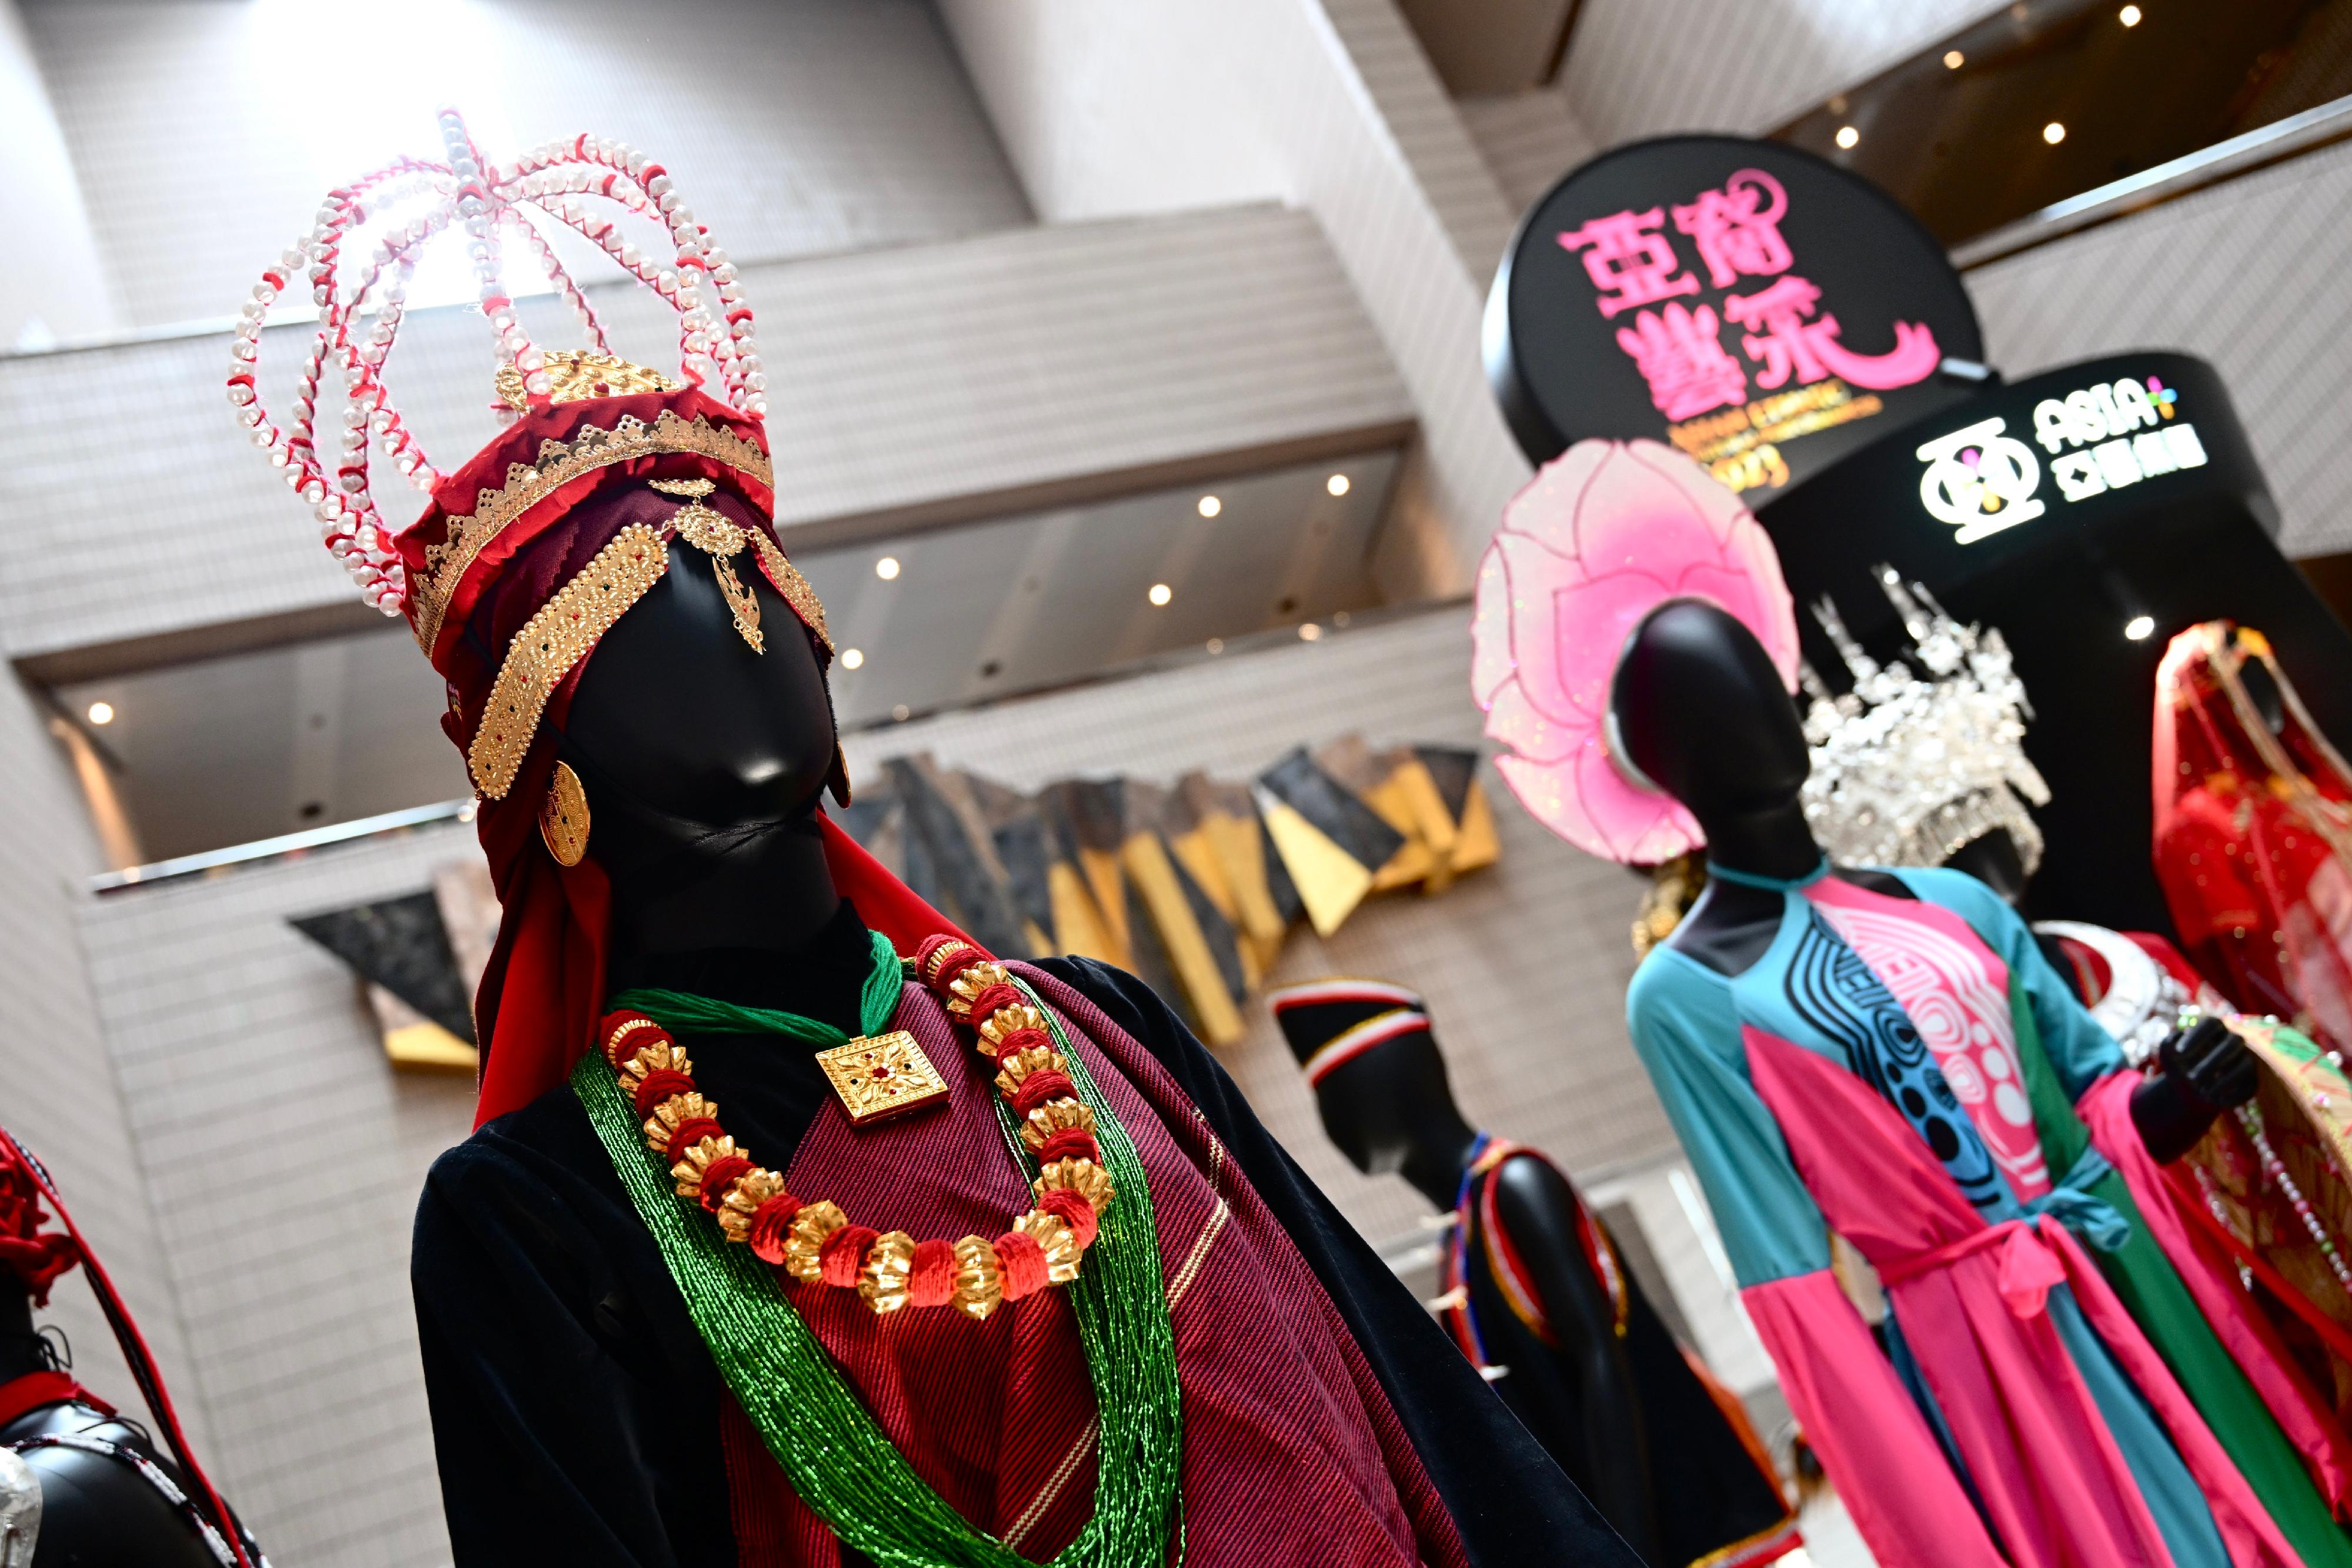 康樂及文化事務署今日（十一月十二日）下午在香港文化中心露天廣場舉行「亞裔藝采」，其中的「花冕霓裳—民族服裝頭飾展」在香港文化中心大堂舉行至十一月十九日，展示亞洲各地人民在節慶活動、歌舞表演等場合穿着的服裝和頭飾，繽紛多彩。圖示尼泊爾（左）和越南（右）的民族服裝頭飾。